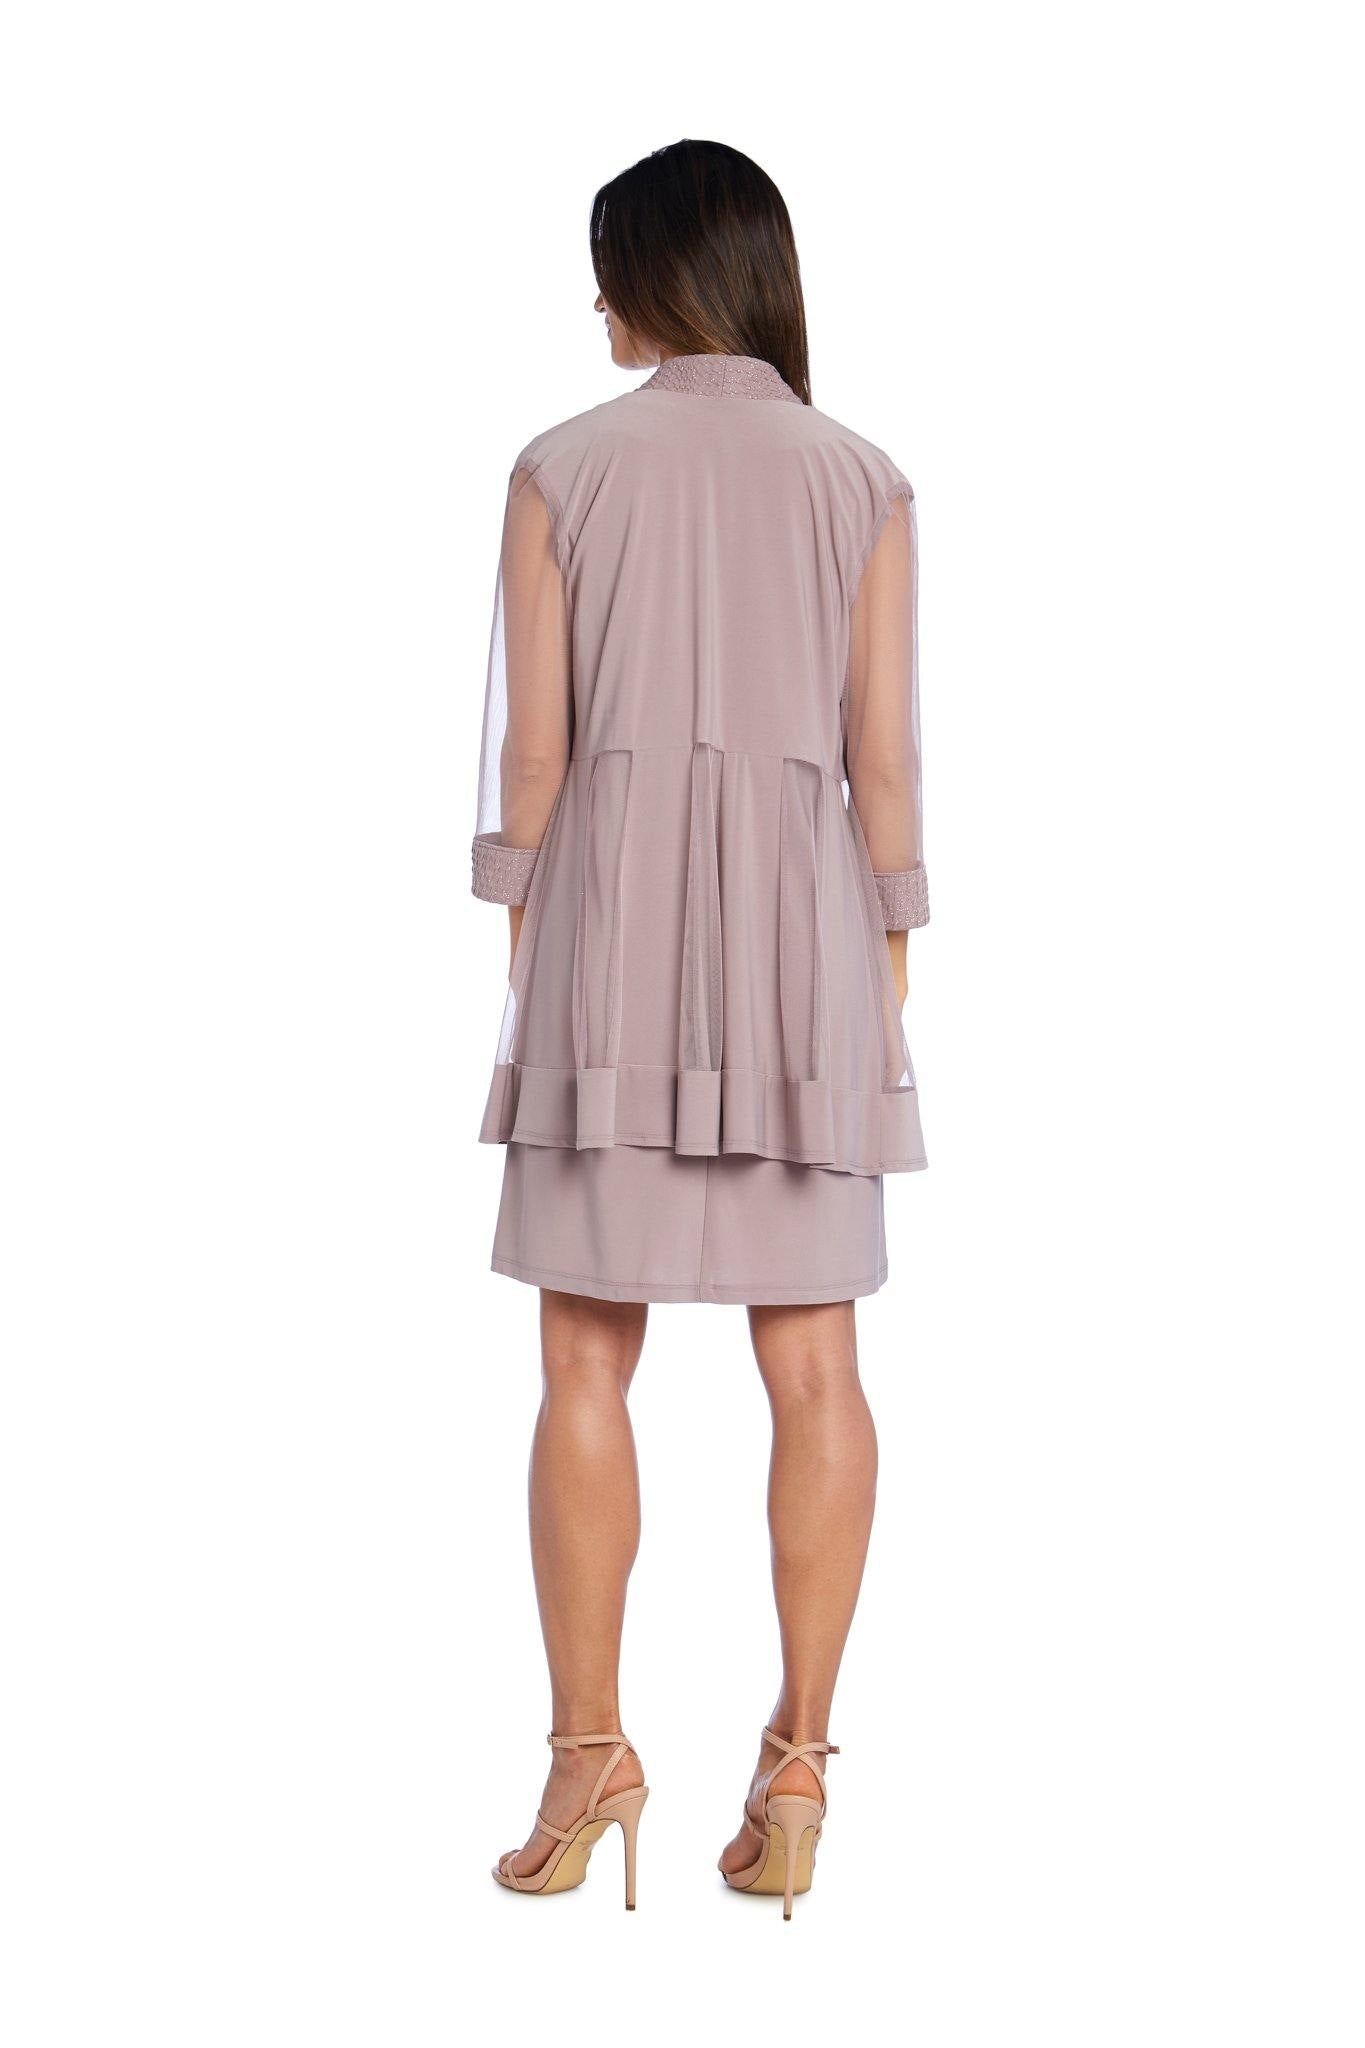 R&M Richards Short Petite Jacket Dress 5394P - The Dress Outlet